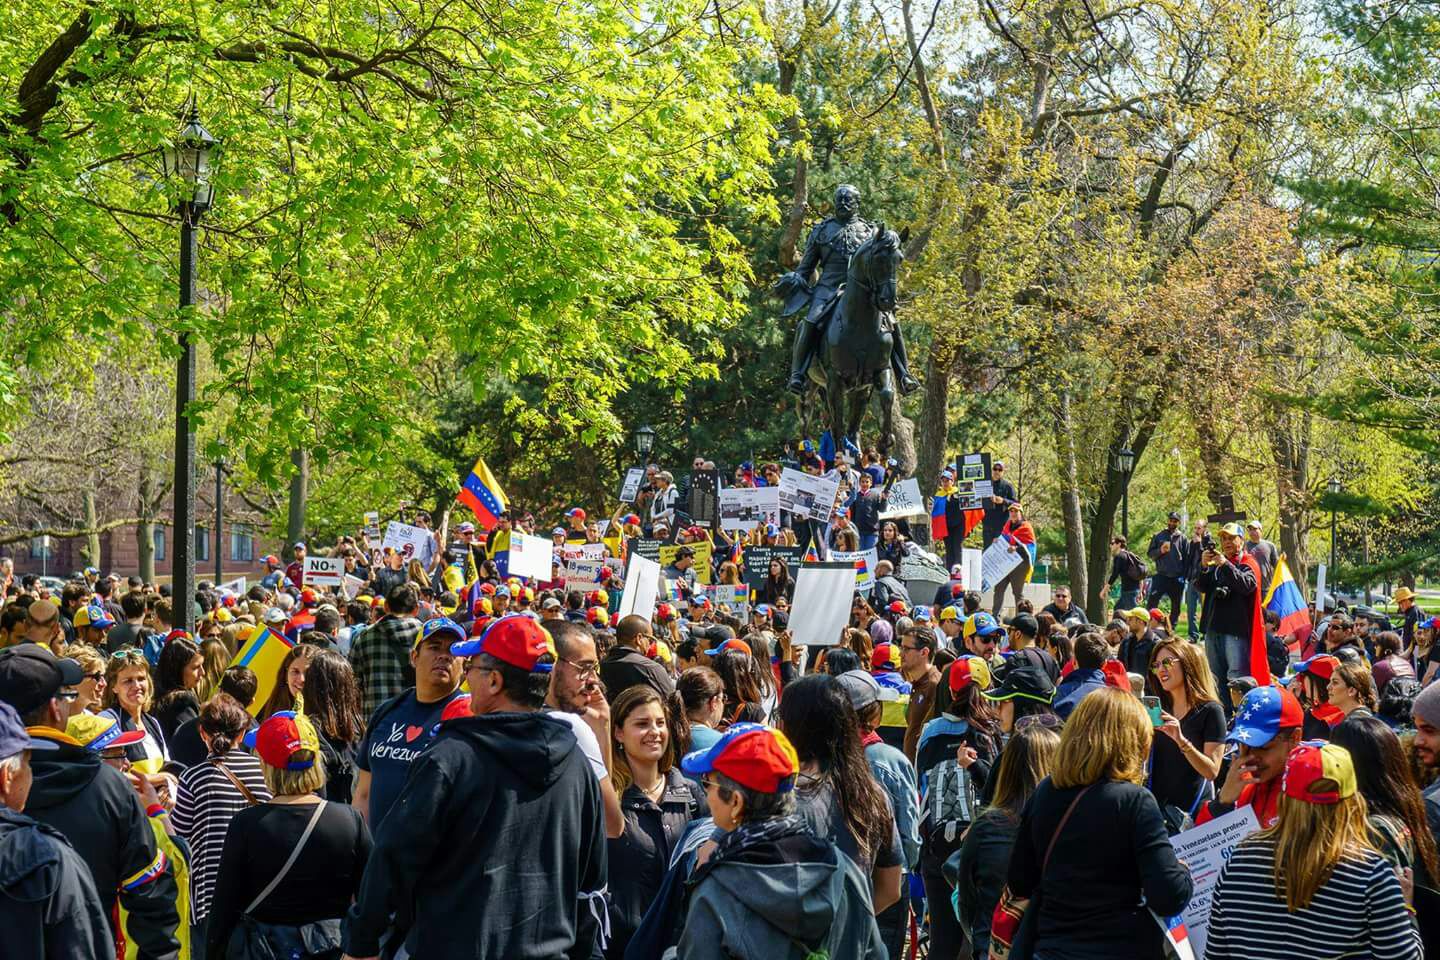 La multitudinaria protesta de venezolanos en el Queen’s Park de Toronto (fotos)